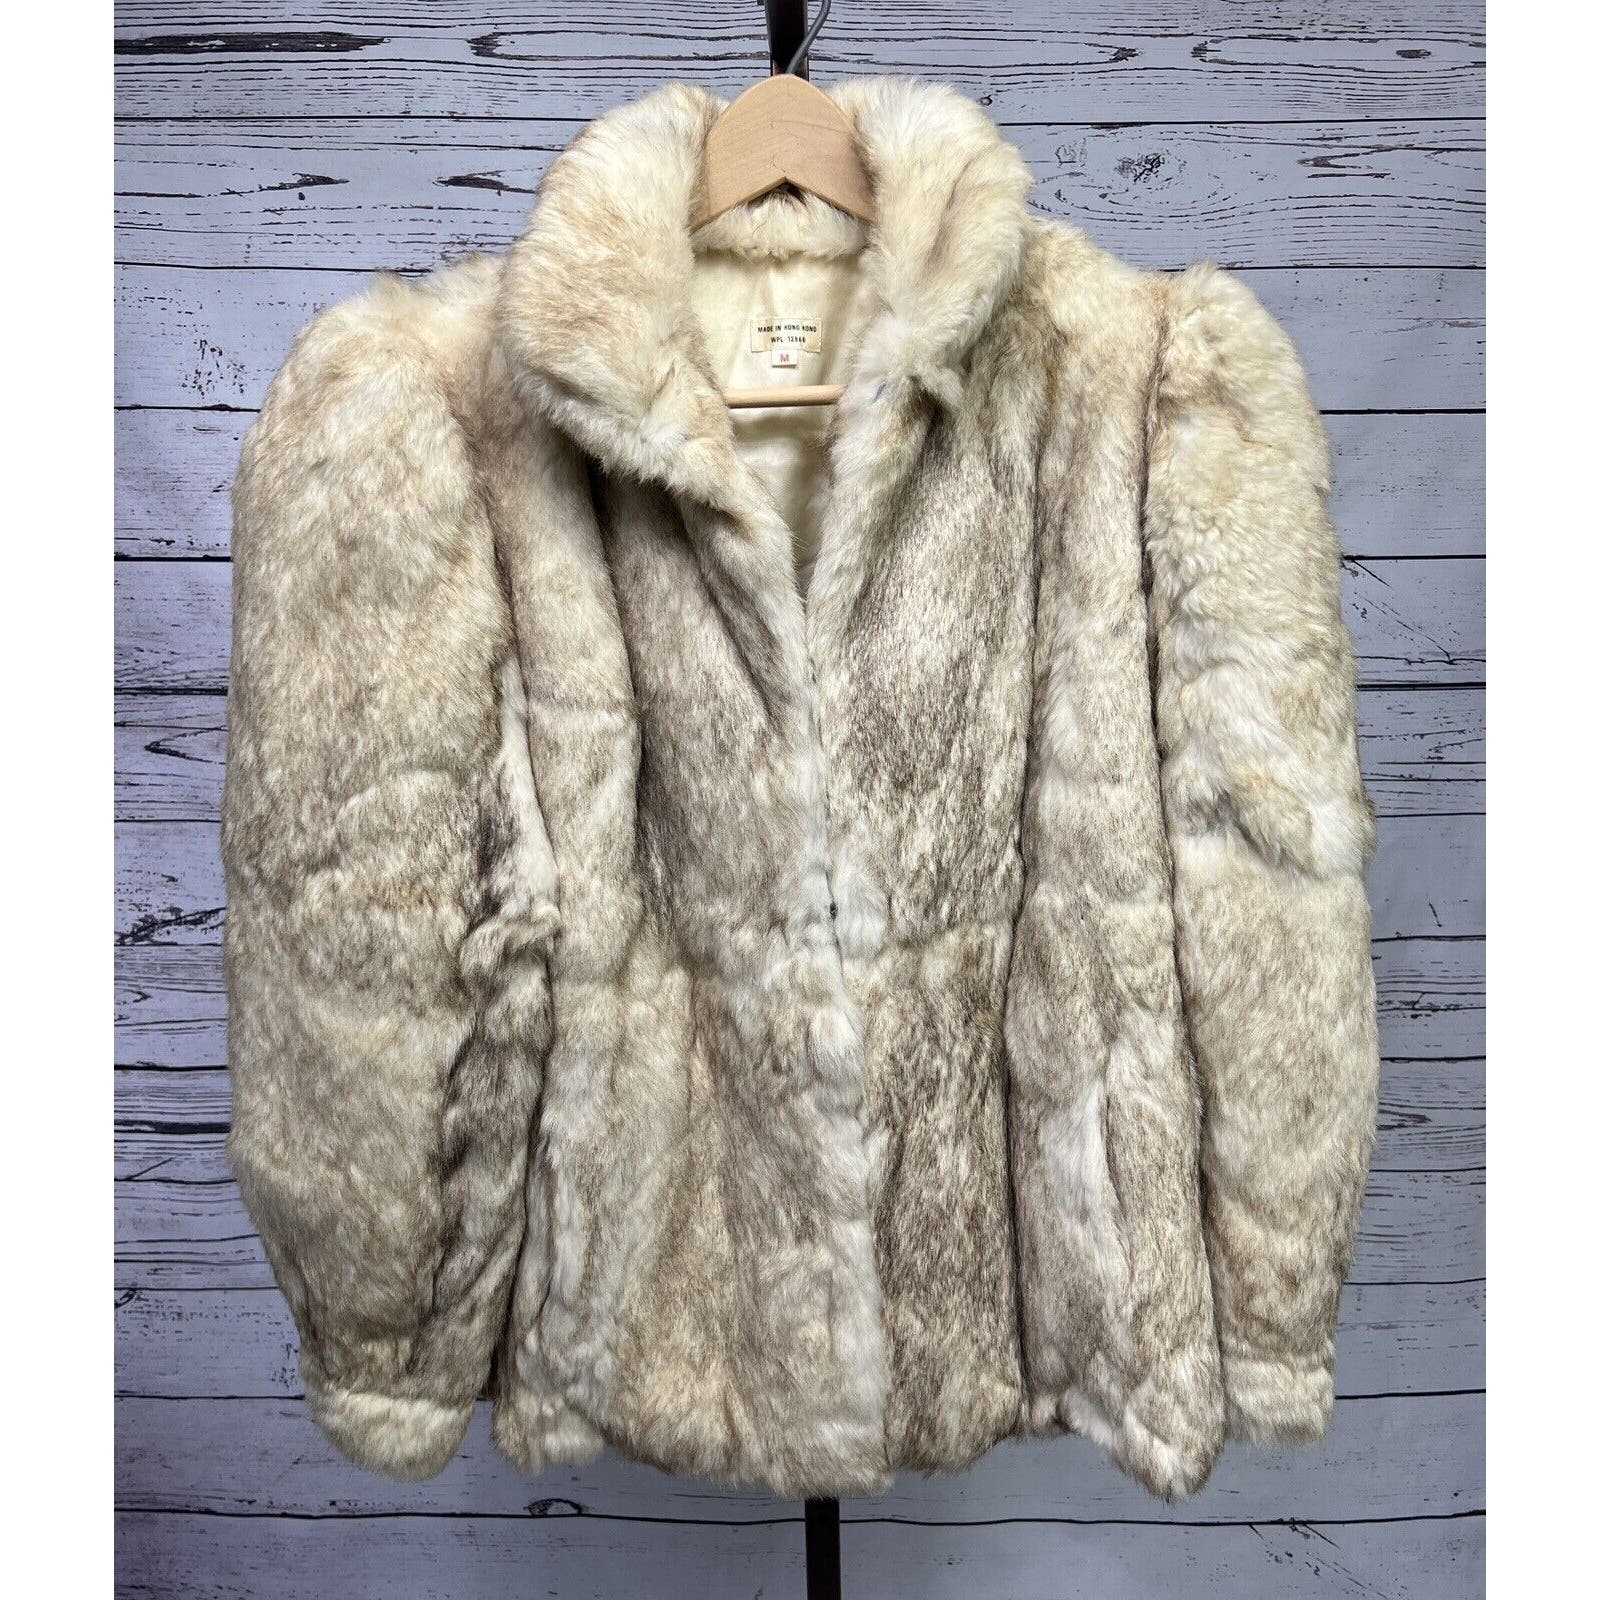 Vintage Genuine Rabbit Fur Coat Jacket Women’s Size M Cream w/ Dark Tips Pockets